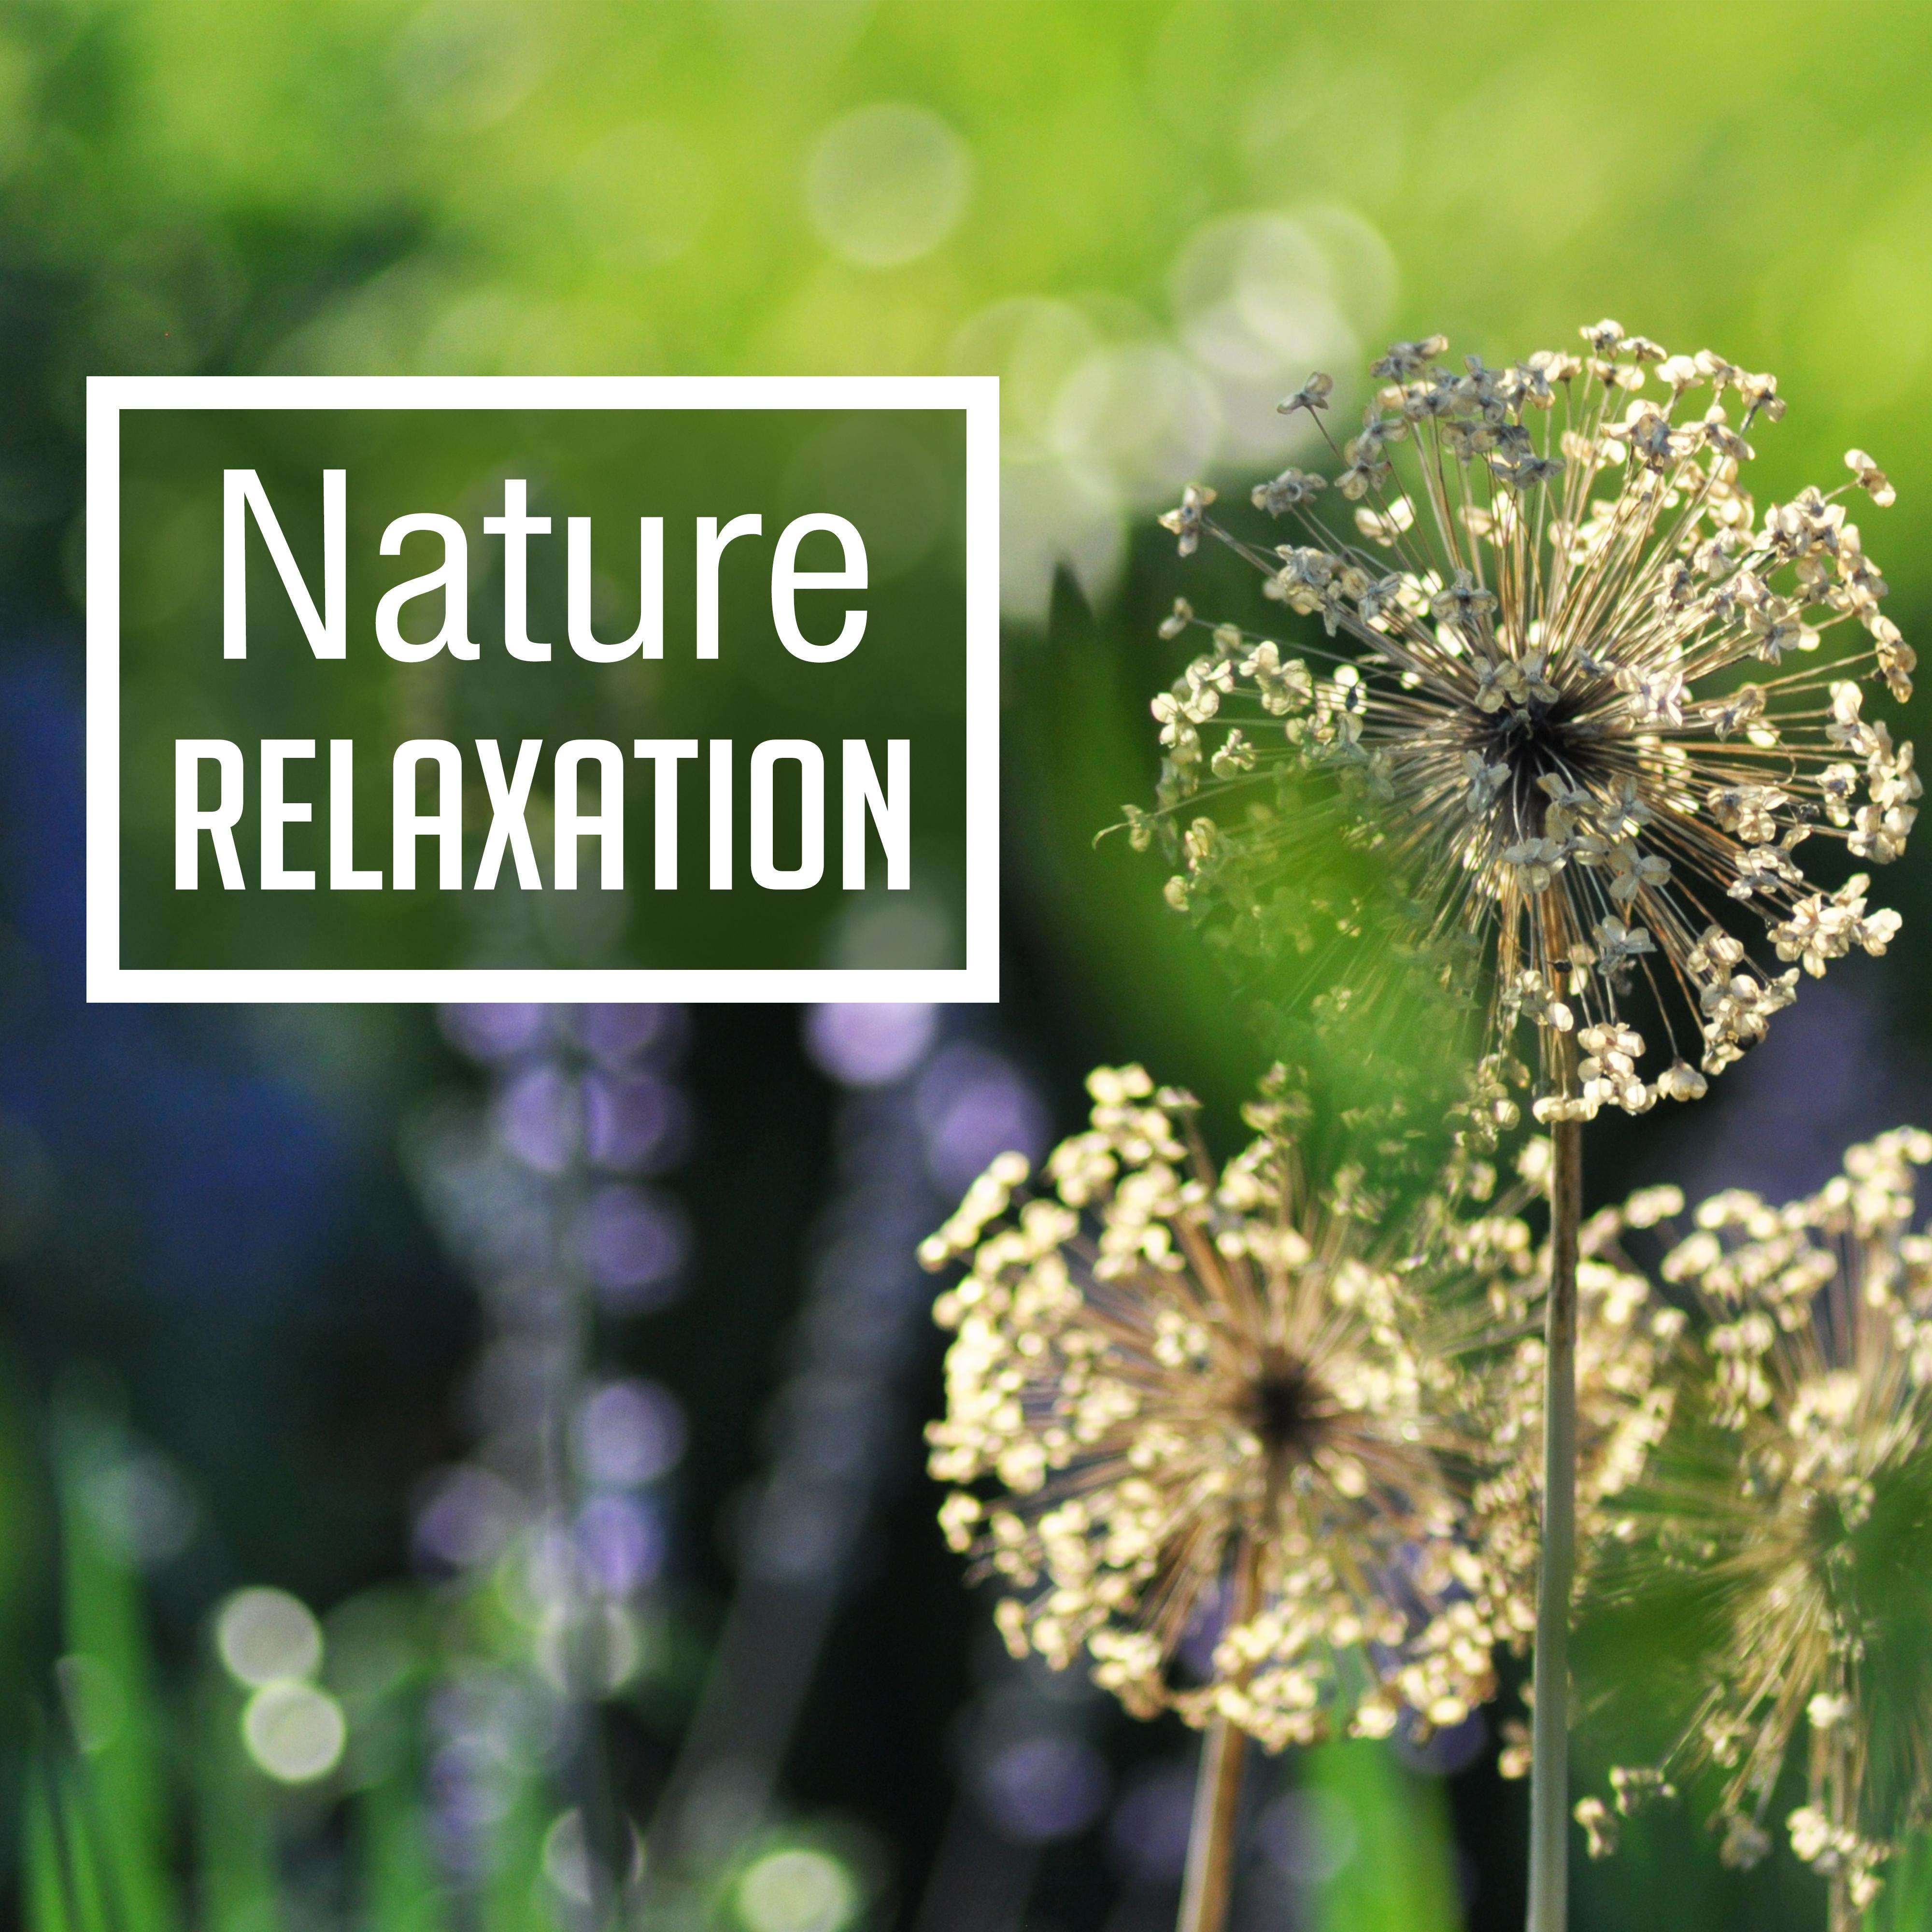 Nature Relaxation – Oriental Music for Massage, Spa, Wellness, Tibetan Calmness, Healing Nature, Rest